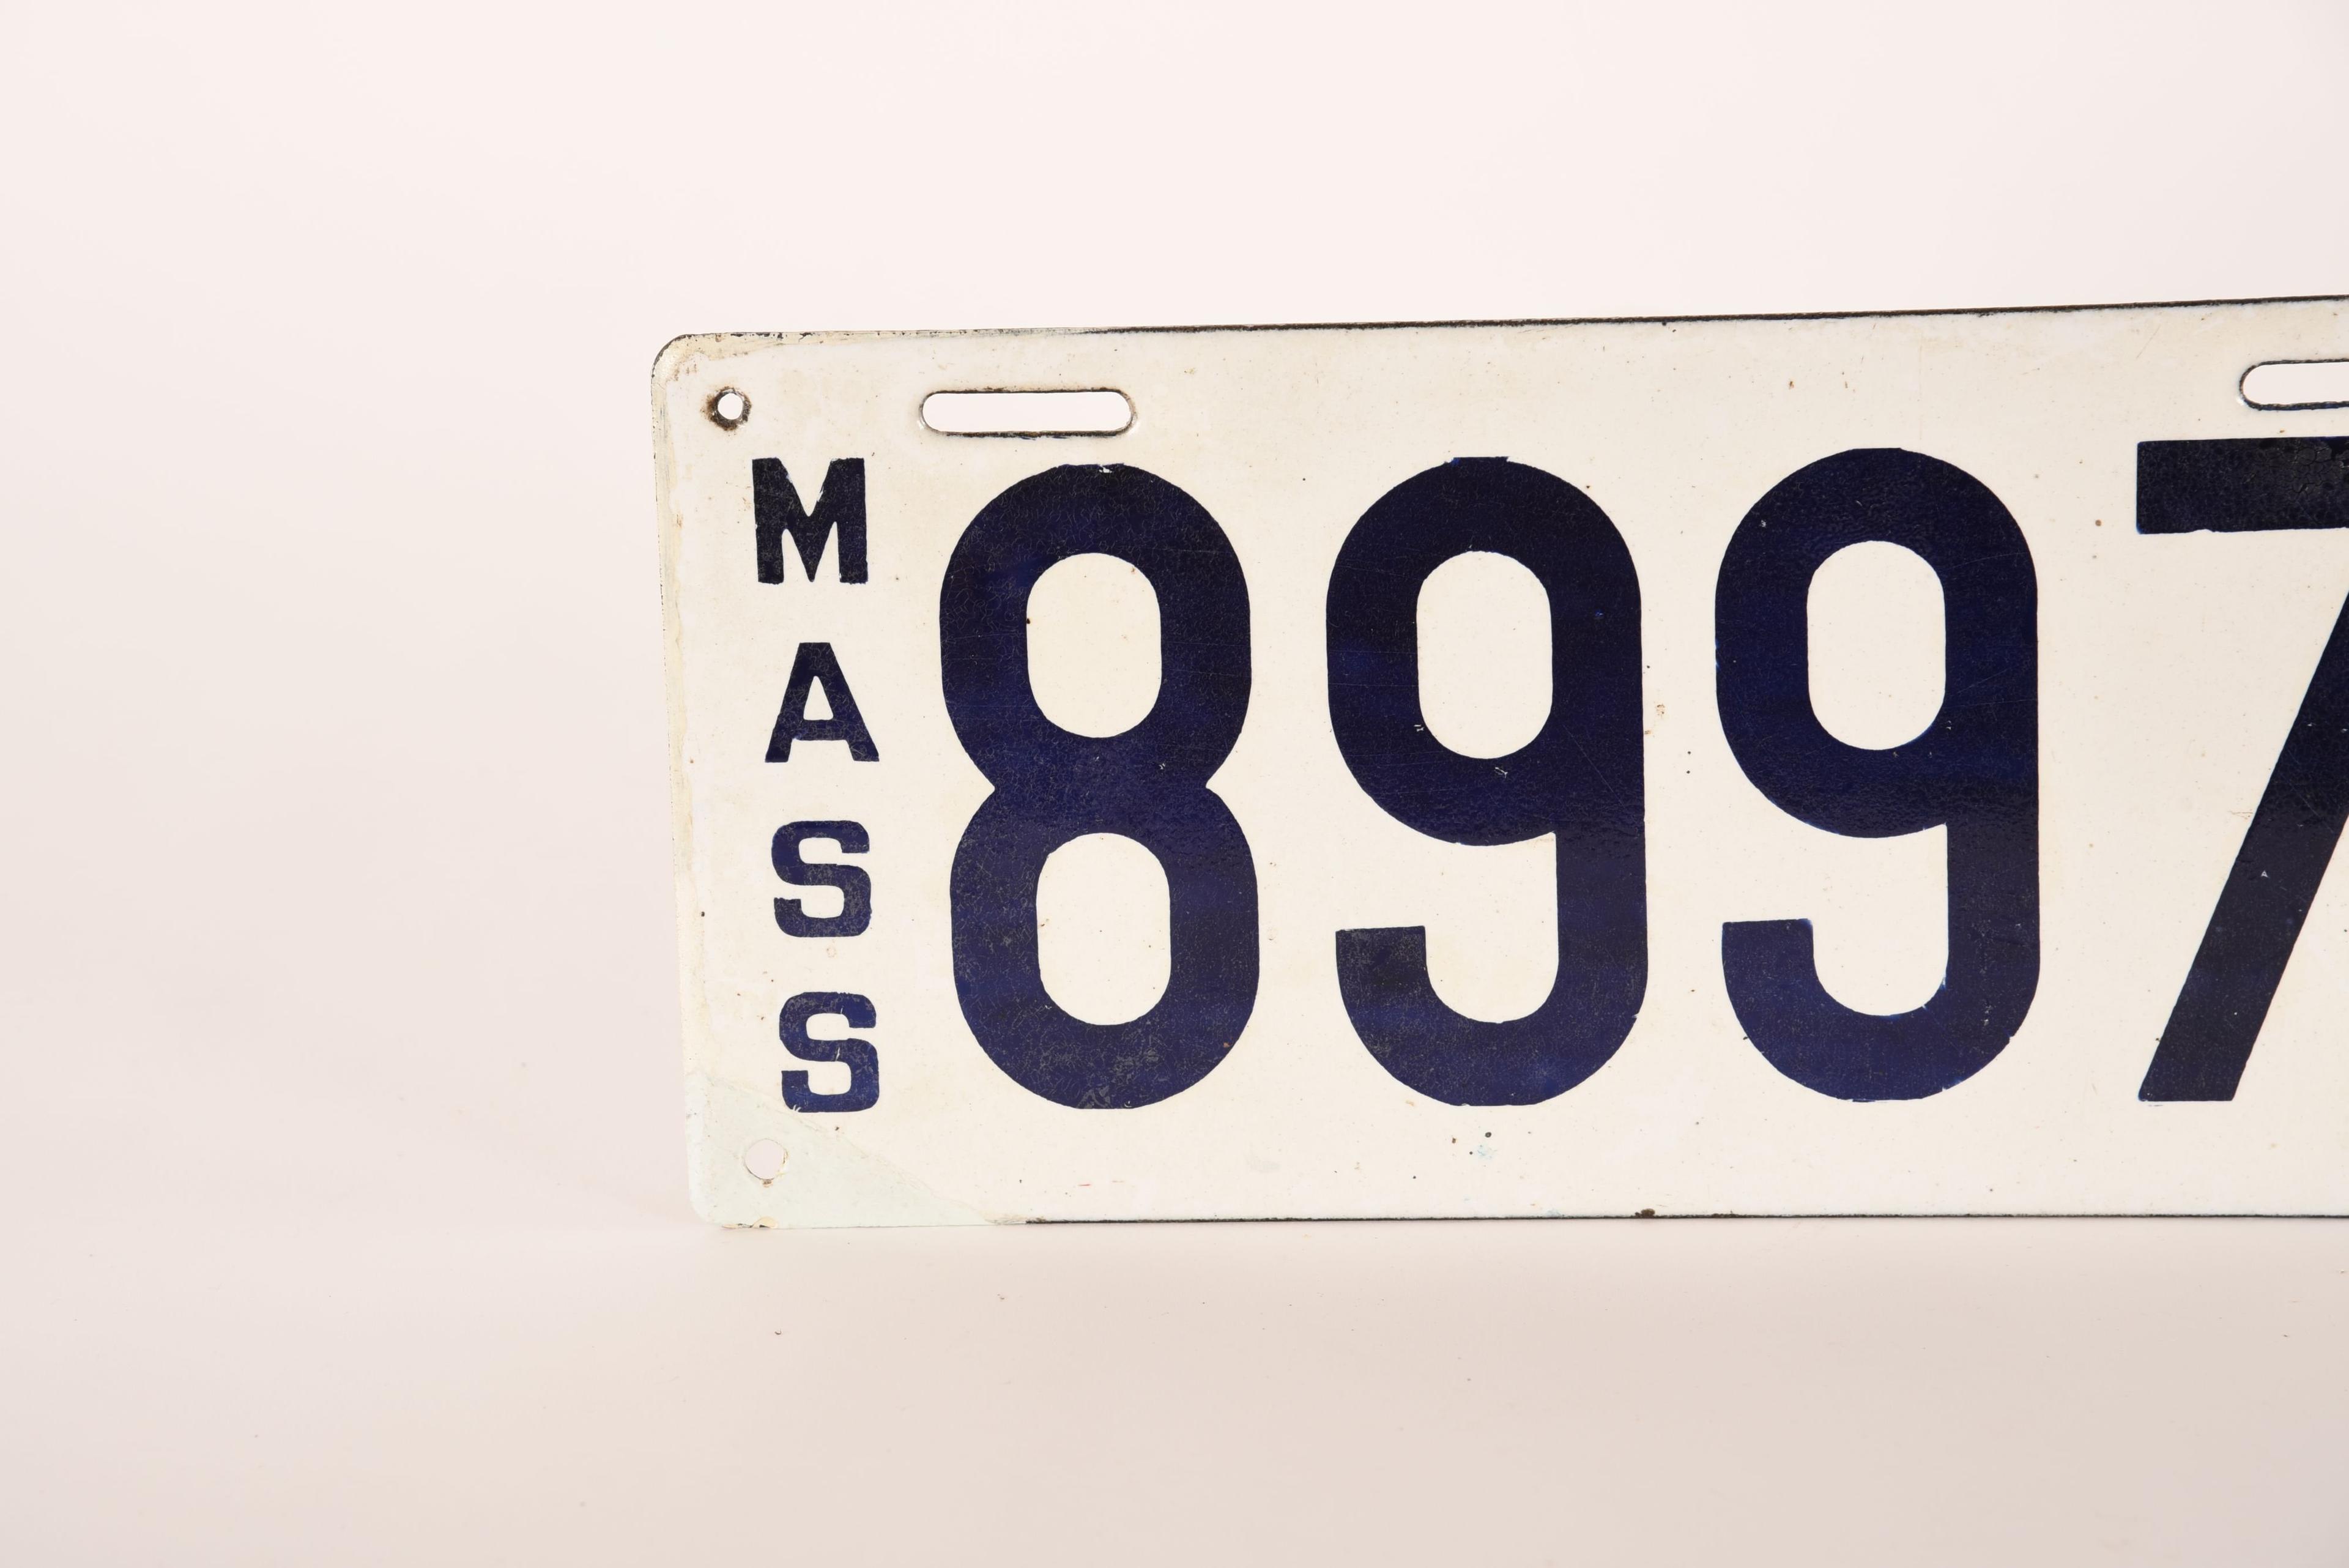 Massachusetts 1912 Porcelain License Plate